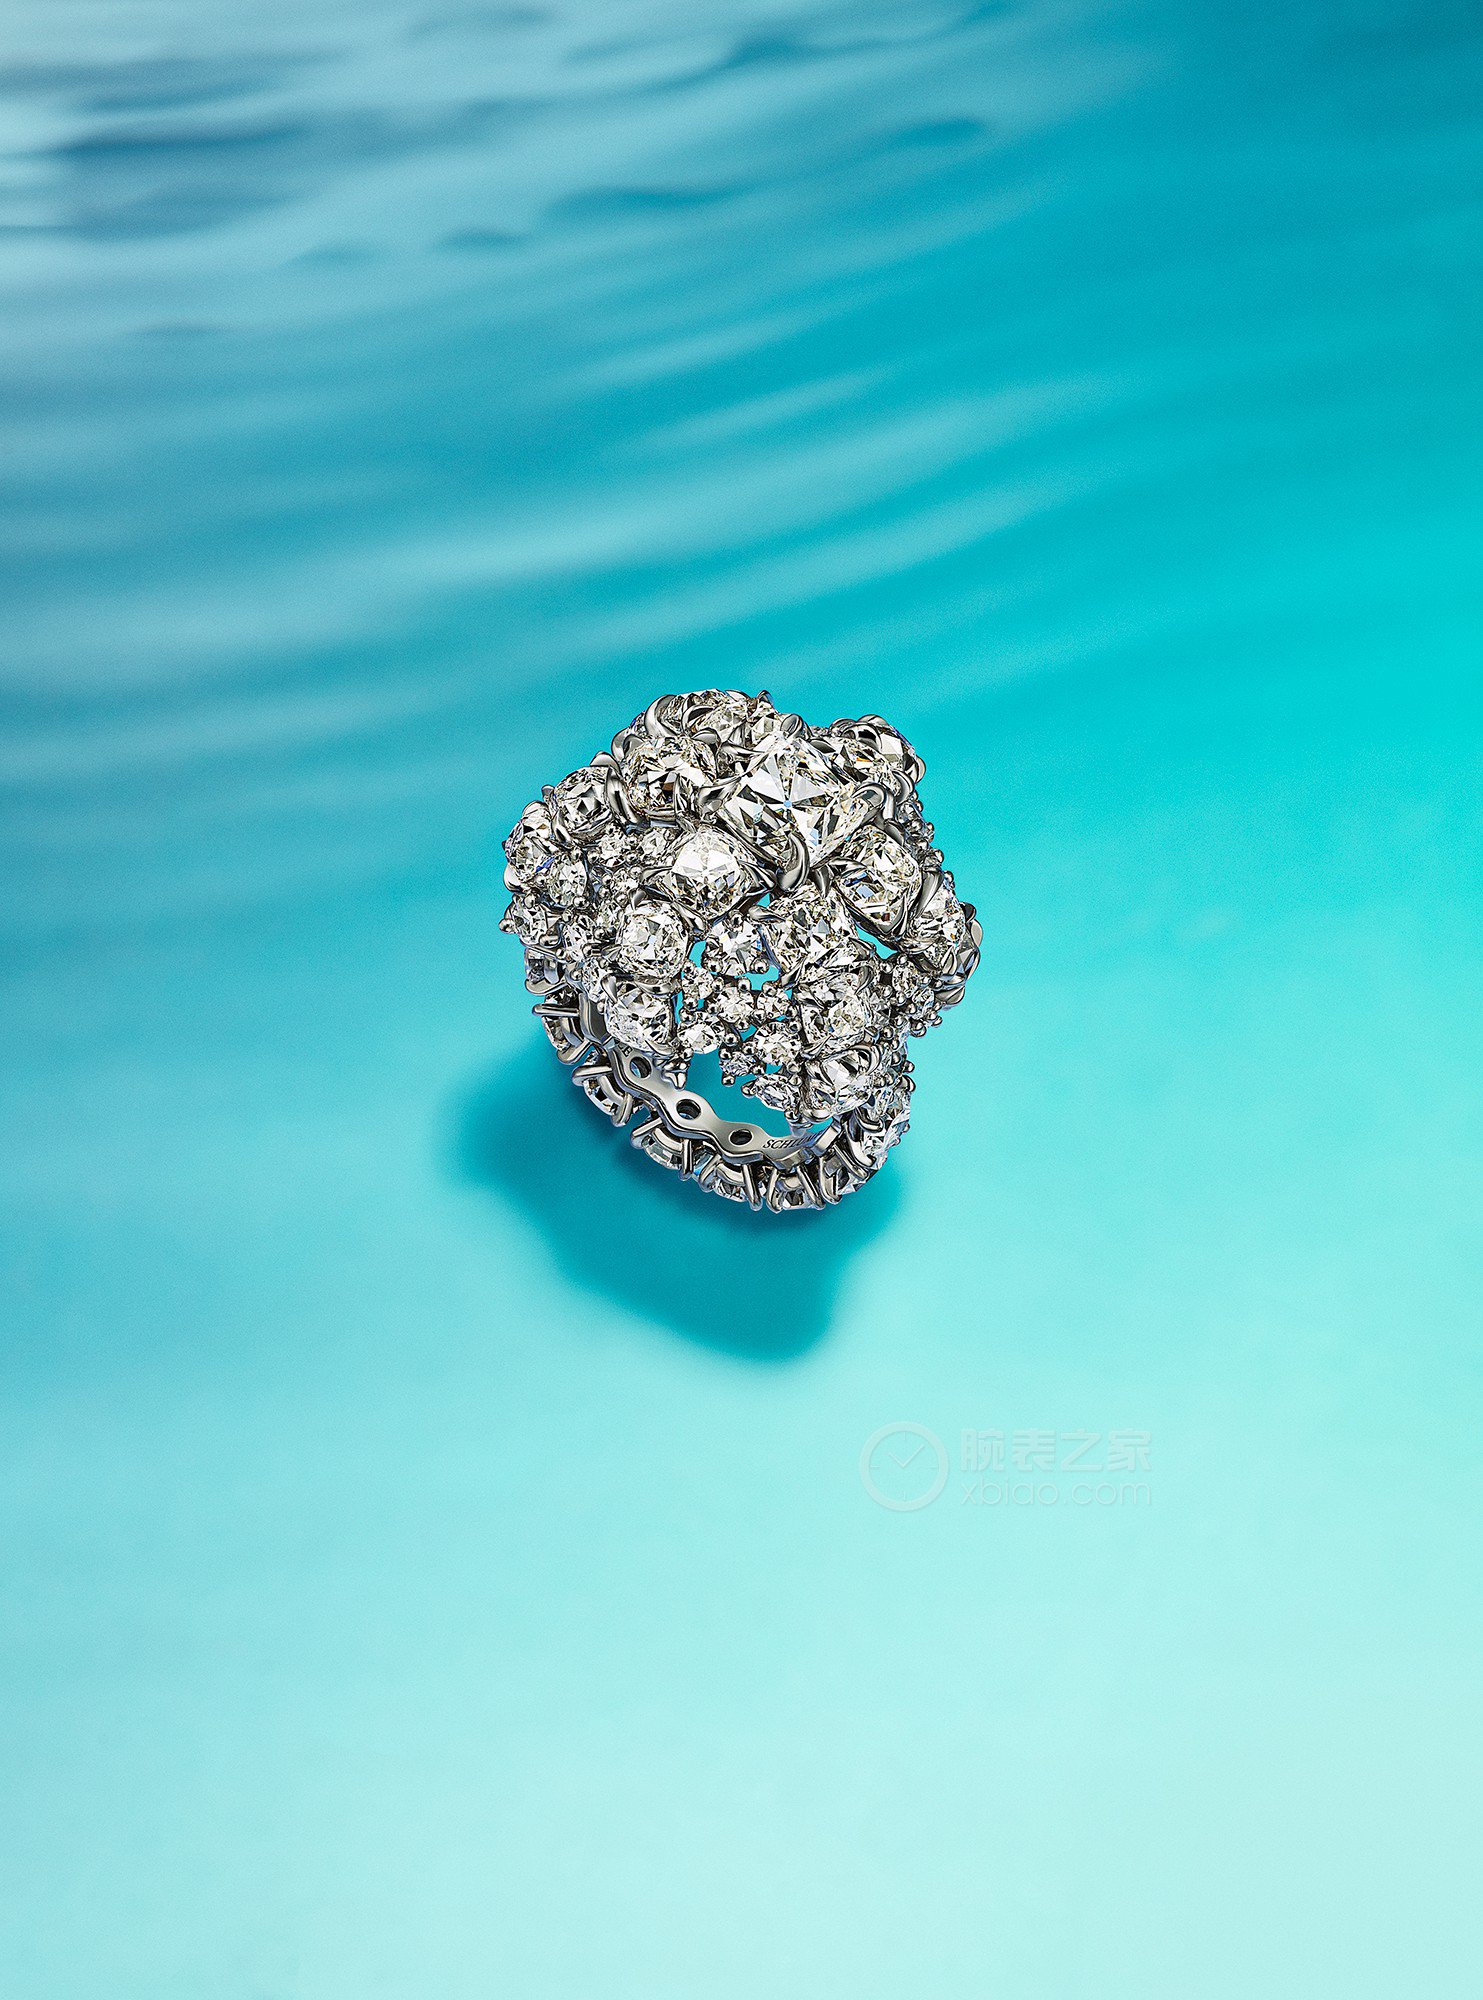 蒂芙尼BLUE BOOK高级珠宝铂金镶嵌一颗重逾2克拉的钻石及钻石戒指戒指